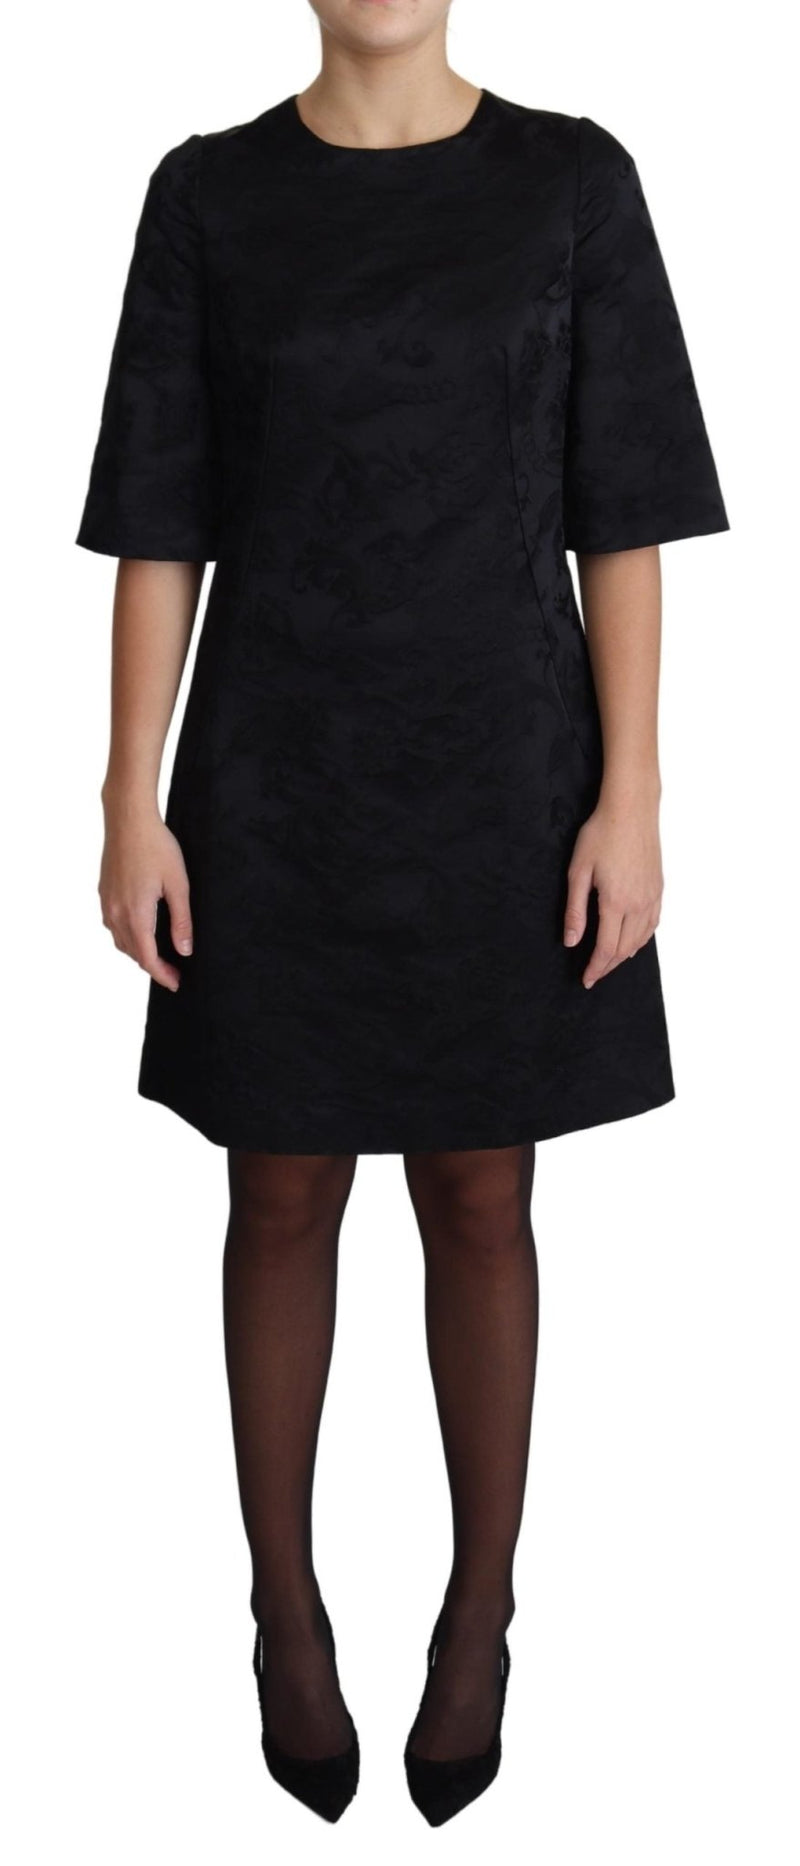 Dress Cotton Black Floral Jacquard A-line Dress - Avaz Shop